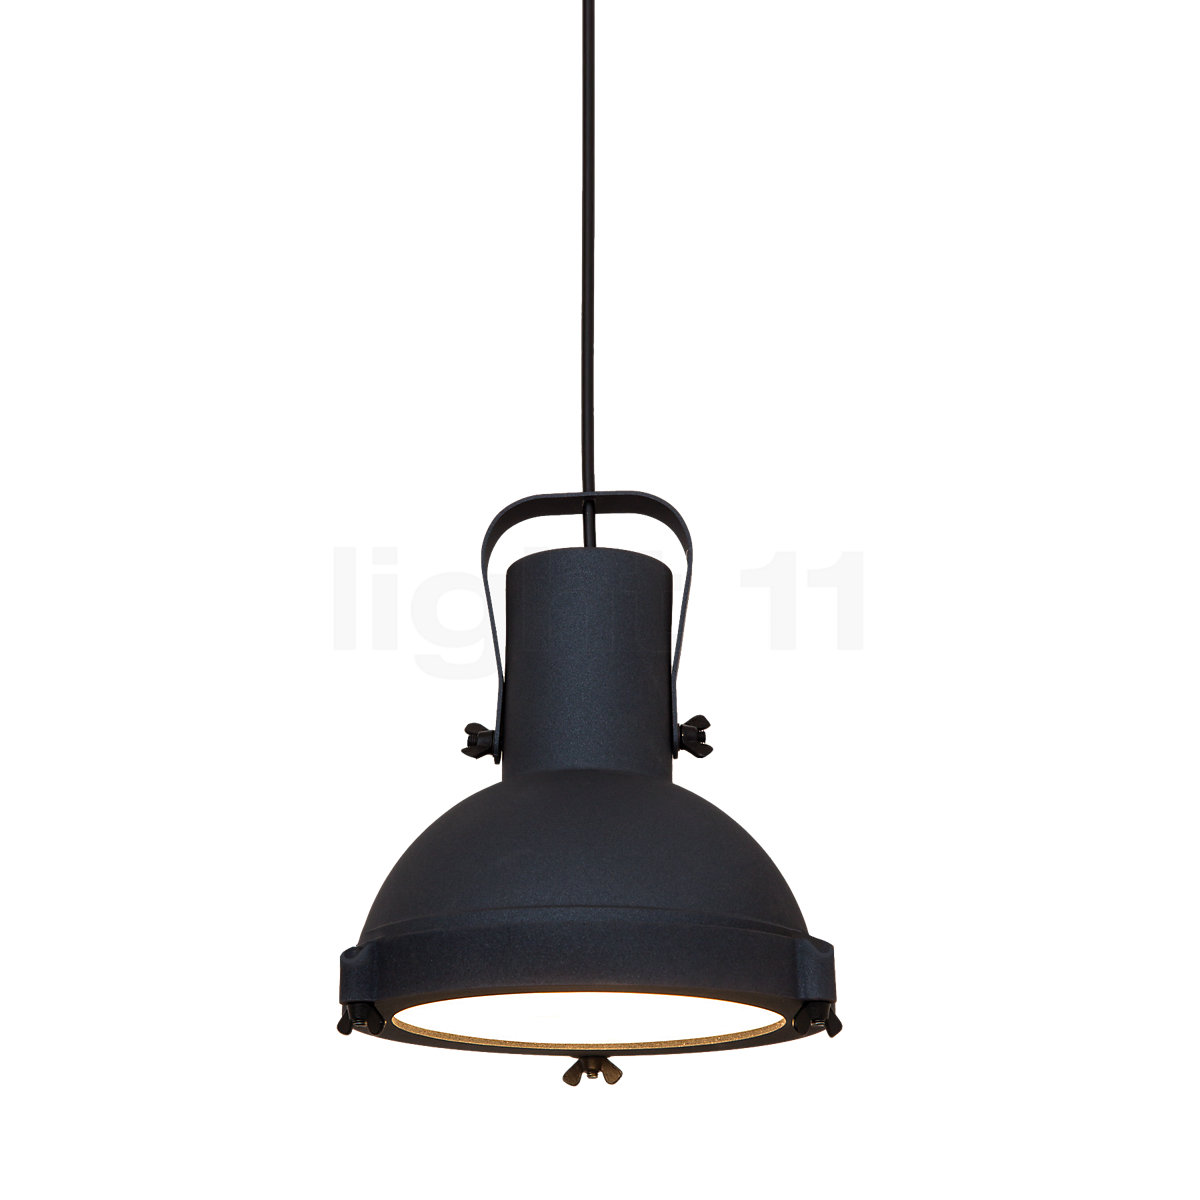 PROJECTEUR 165 Clip - Lampe clipsable Design Nemo Lighting